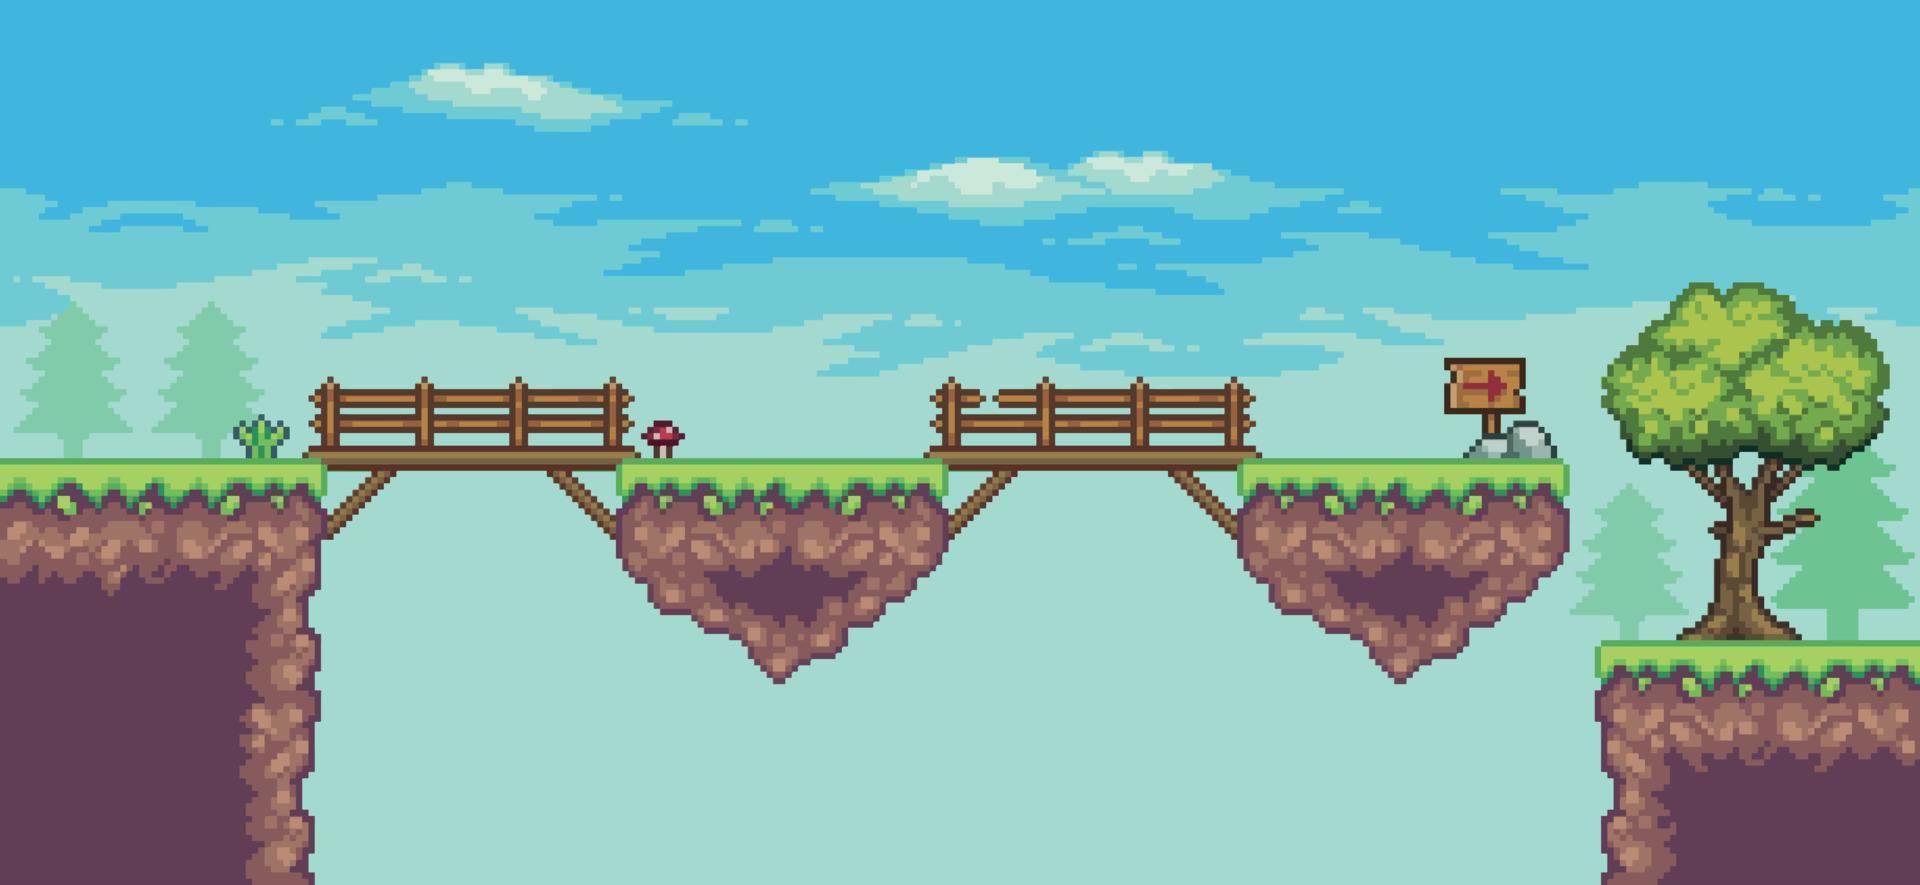 pixel art arkadspelscen med flytande plattform, bro, träd, moln och flagga 8bit vektor